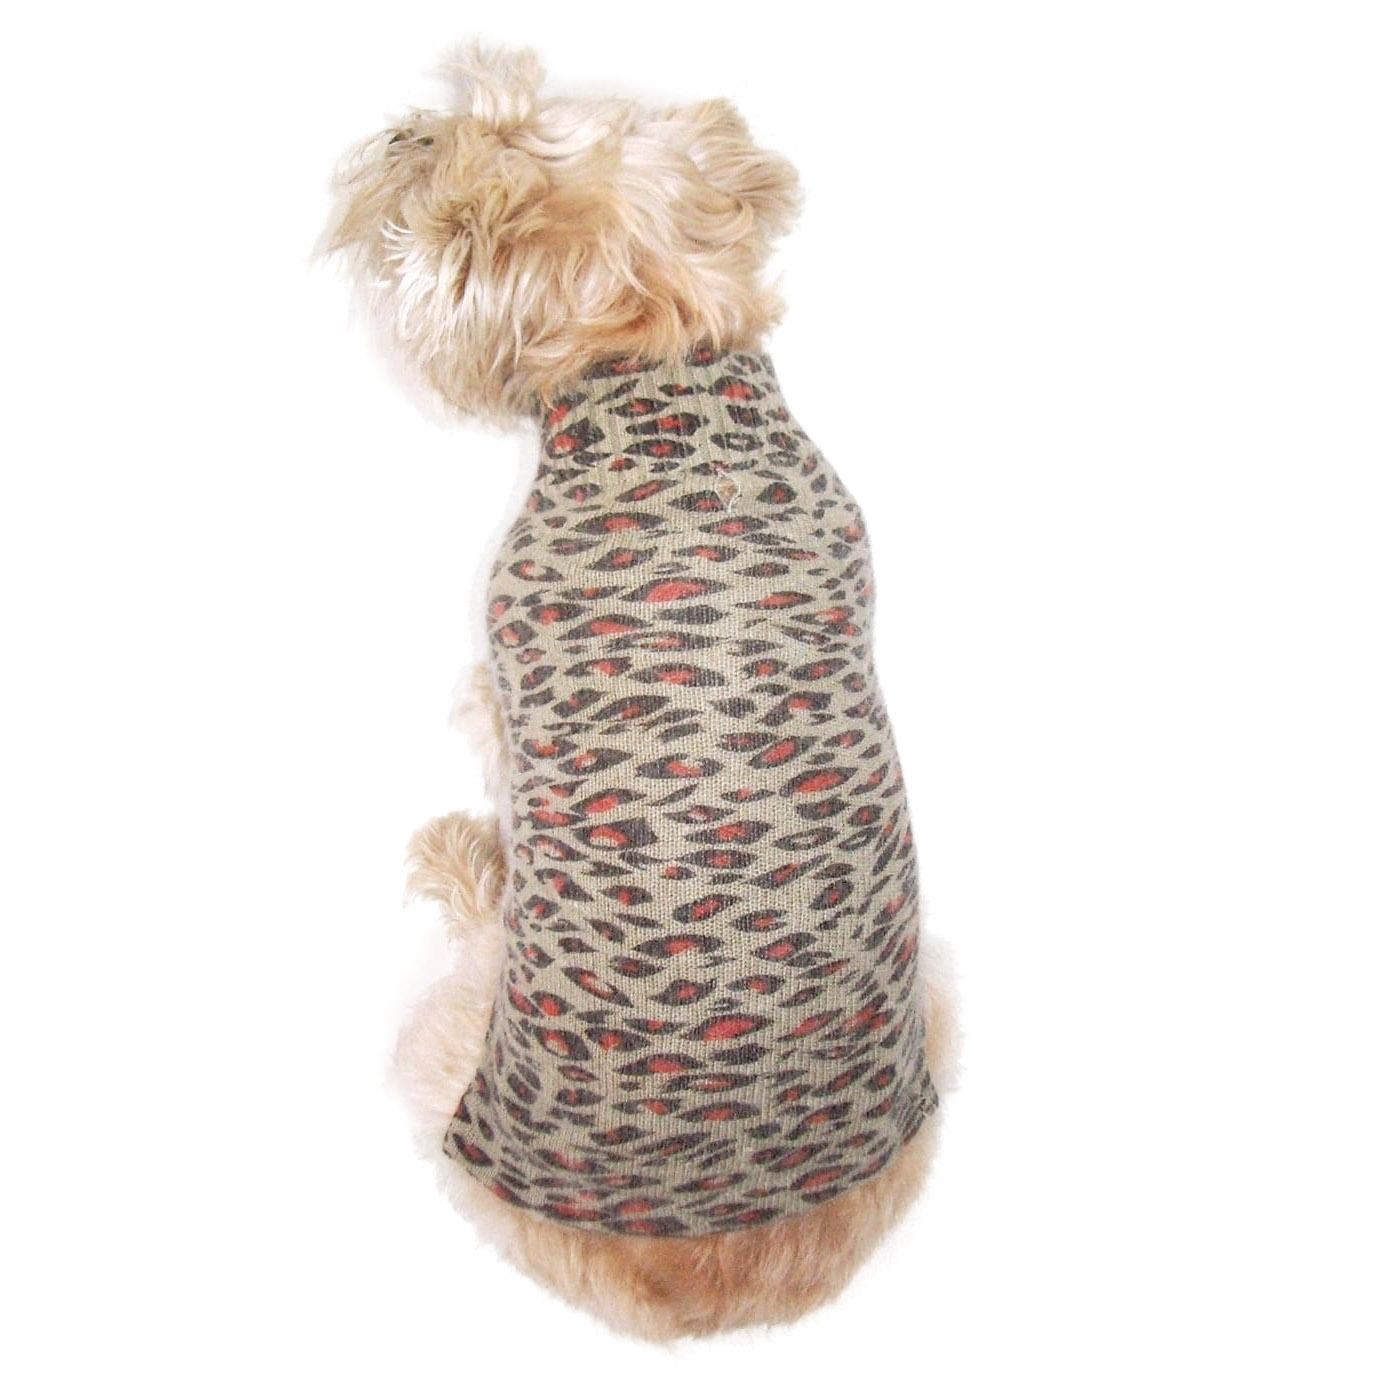 The Dog Squad Animal Instincts Mock Turtleneck Dog Sweater - Brown Leopard